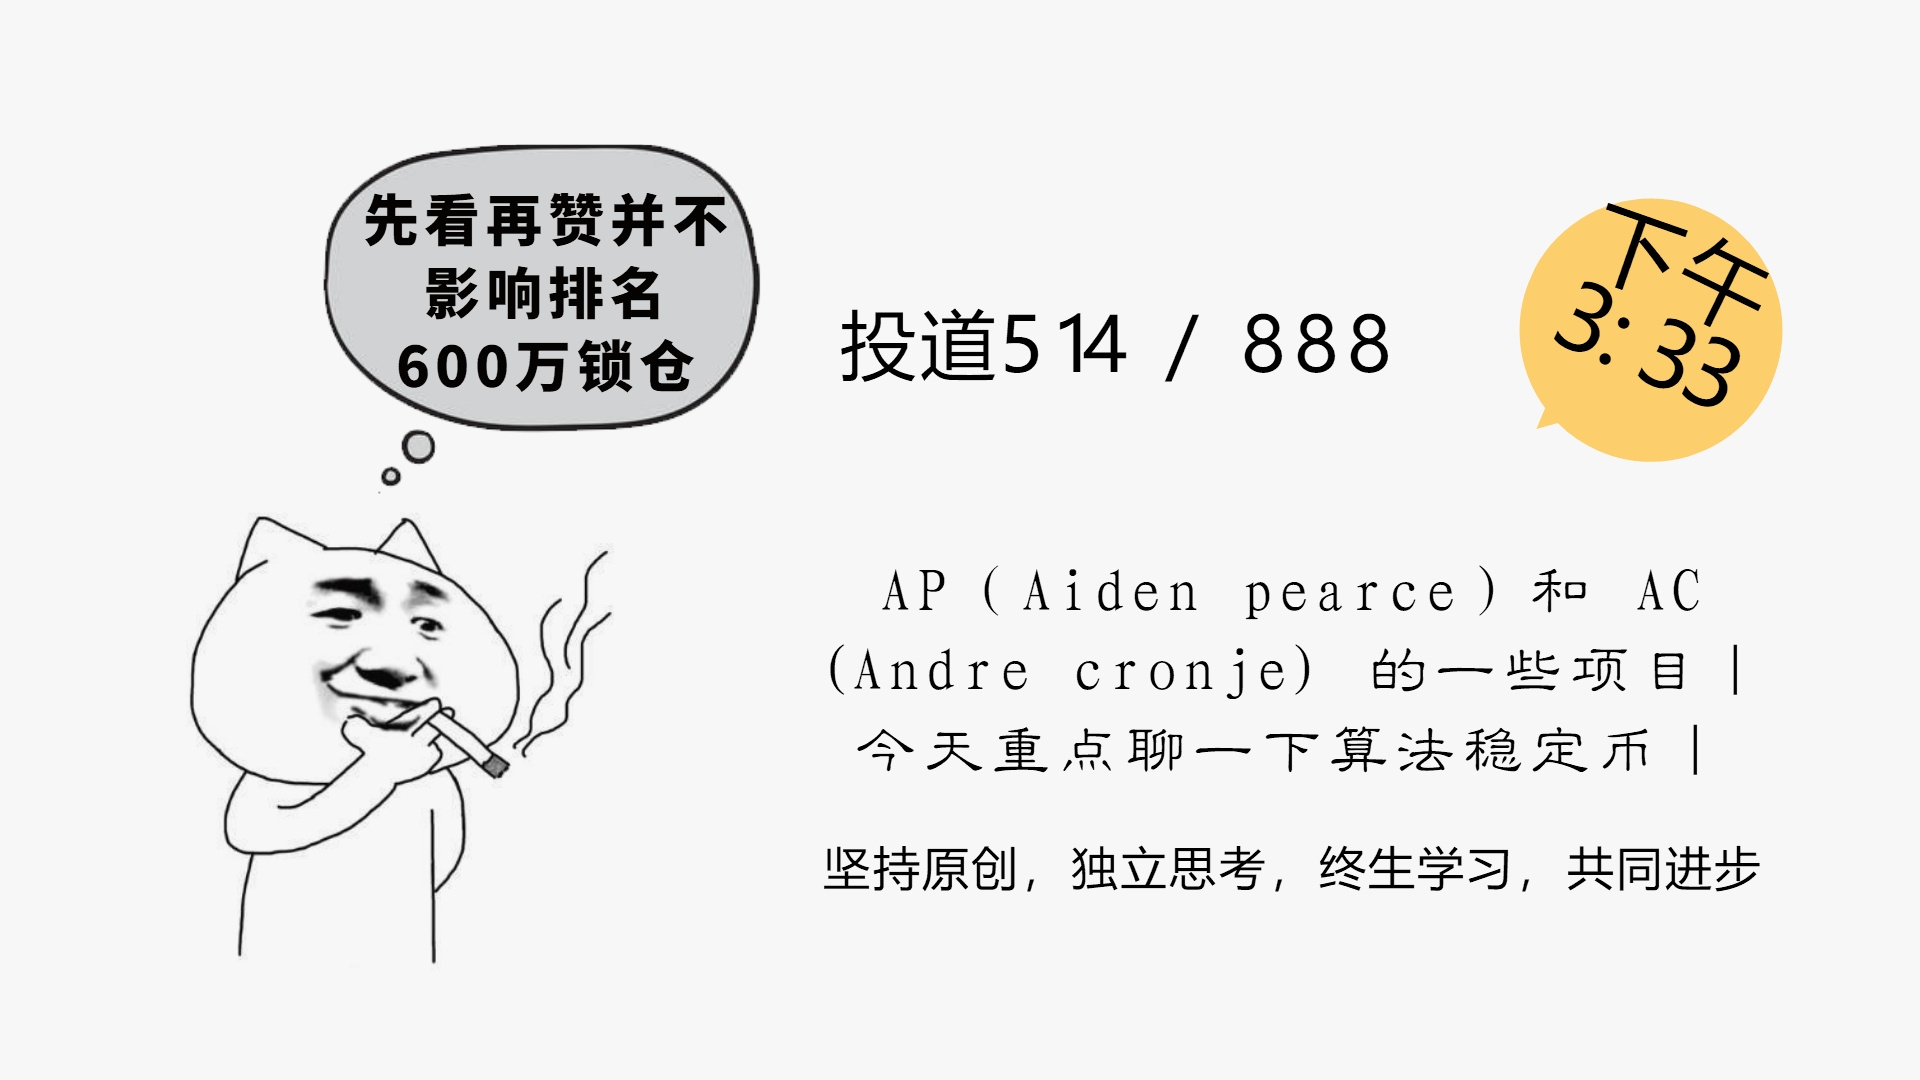 AP（Aiden pearce）和 AC(Andre cronje) 的一些项目｜算法稳定币